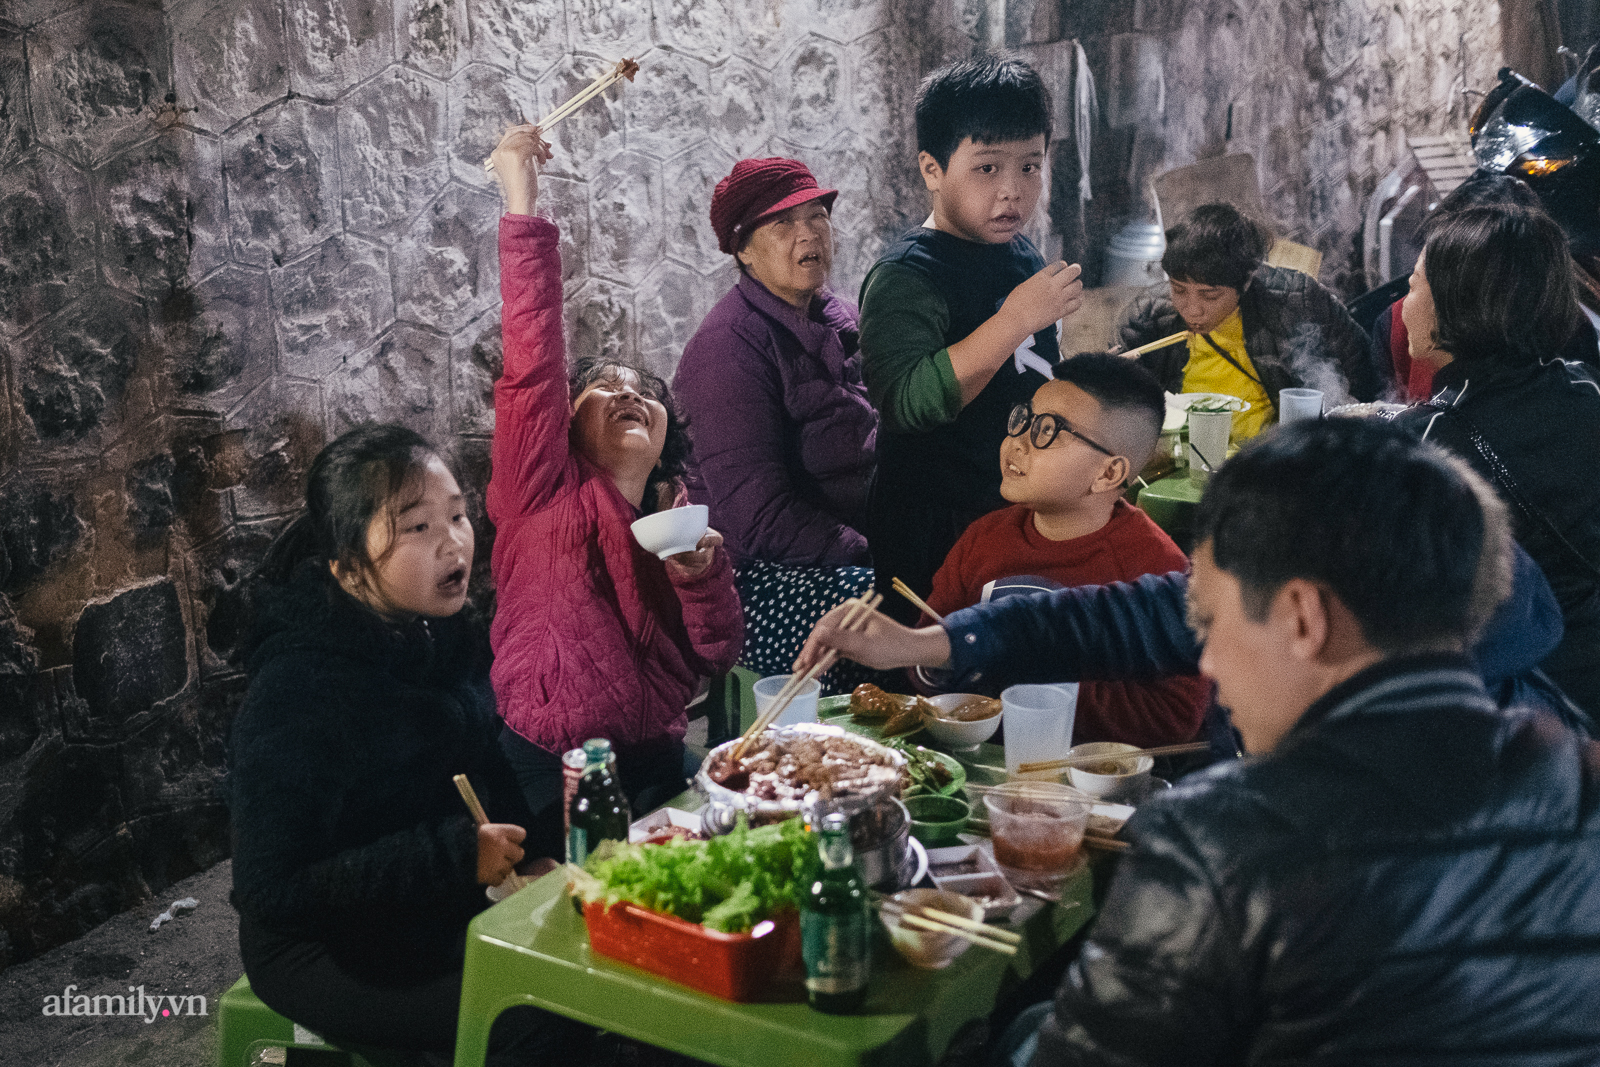 Mùa đông năm nay, cả Hà Nội kéo nhau đi ăn bò nướng chảo gang hay sao mà đi phố nào cũng ngập mùi bơ tỏi  - Ảnh 6.